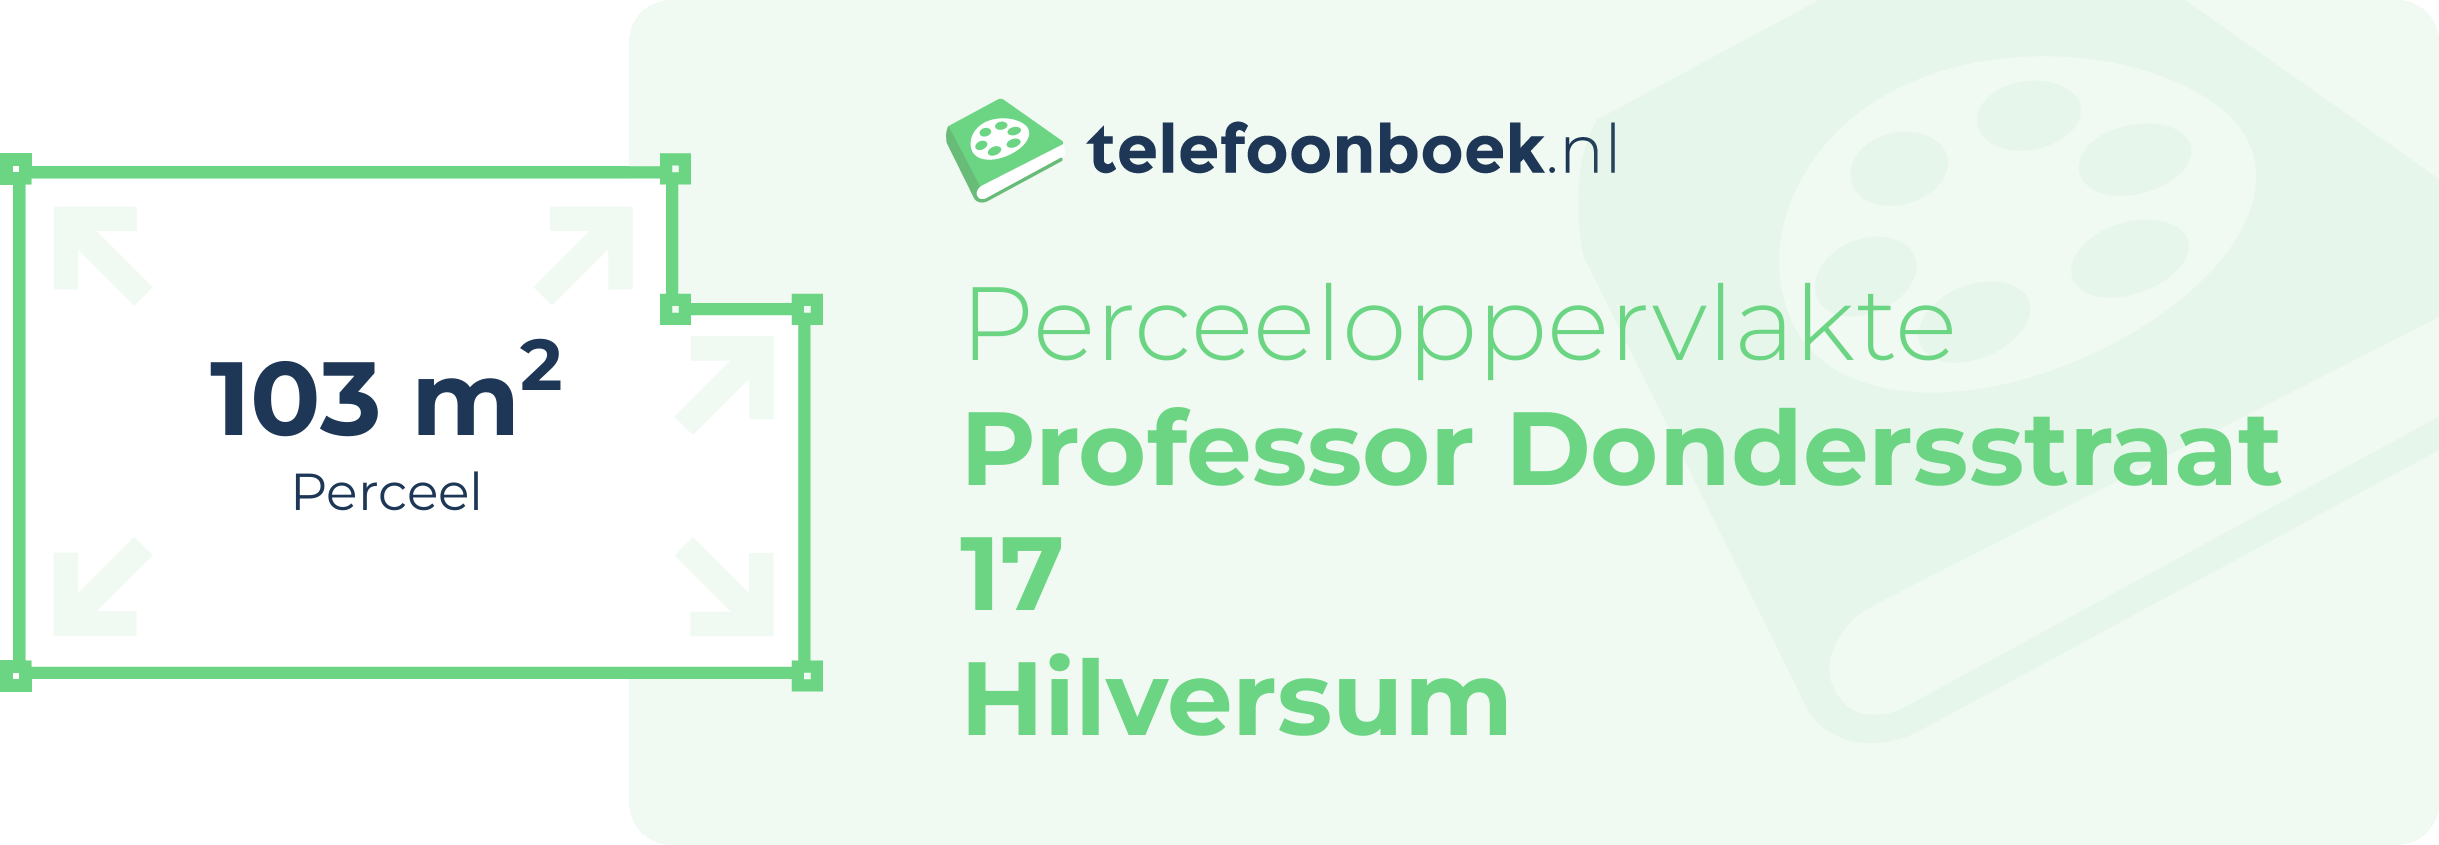 Perceeloppervlakte Professor Dondersstraat 17 Hilversum